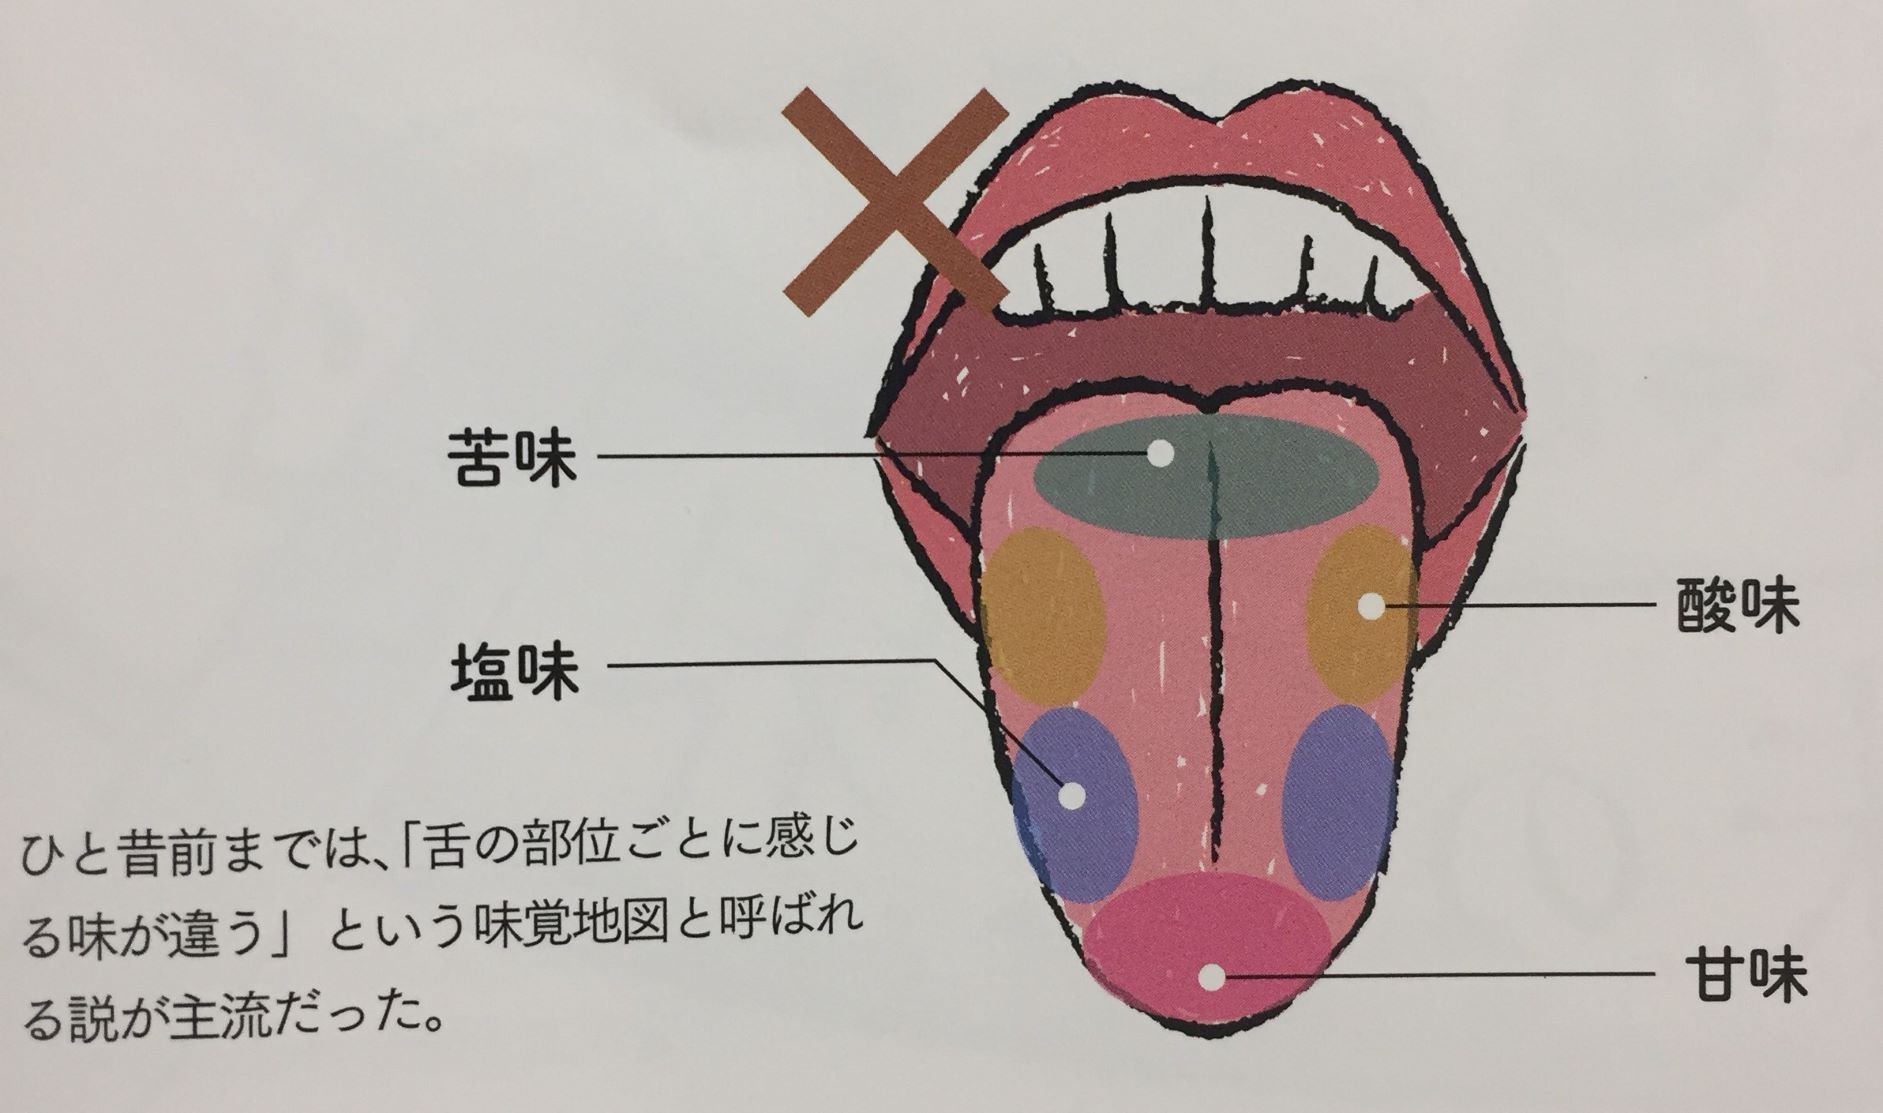 舌 苦味 を 感じる 部分